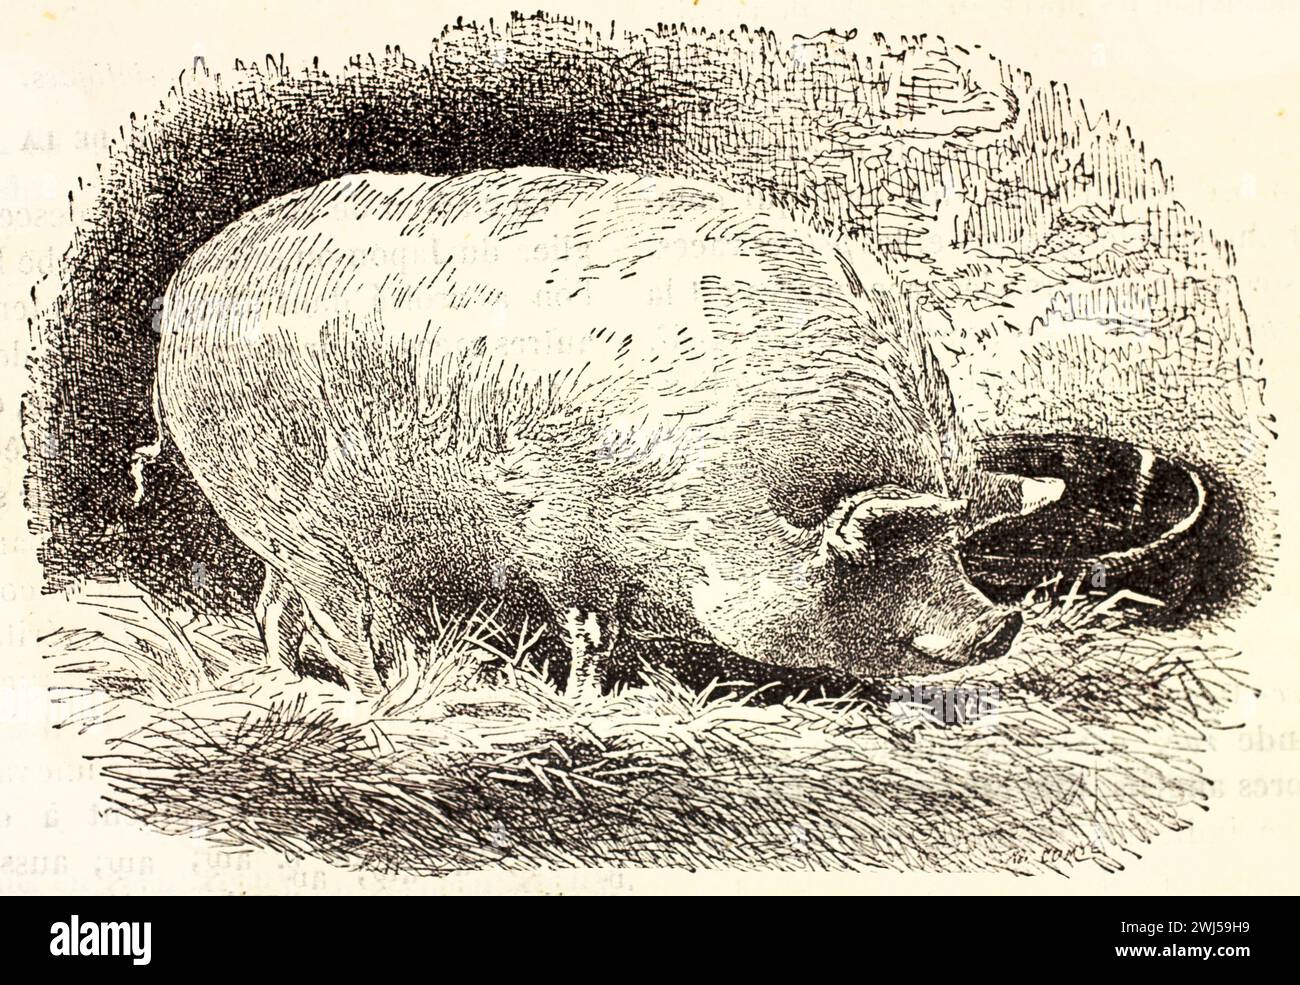 Gros cochon Yorkshire mangeant sur une botte de foin. Rendu dans un style vintage en noir et blanc avec hachures croisées par un auteur inconnu. Paris, 1878 Banque D'Images